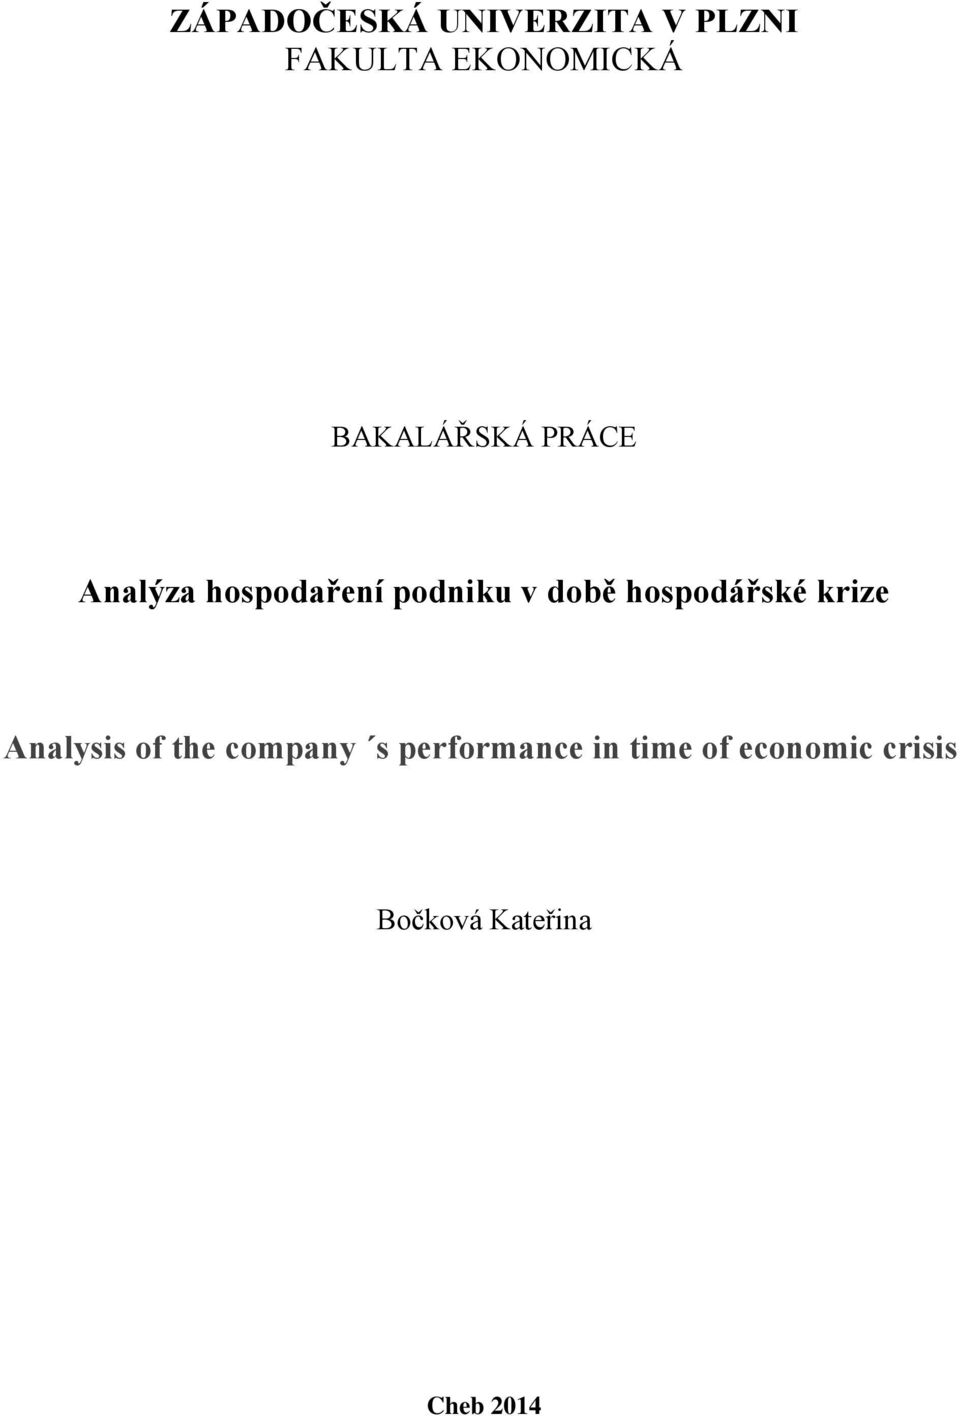 hospodářské krize Analysis of the company s